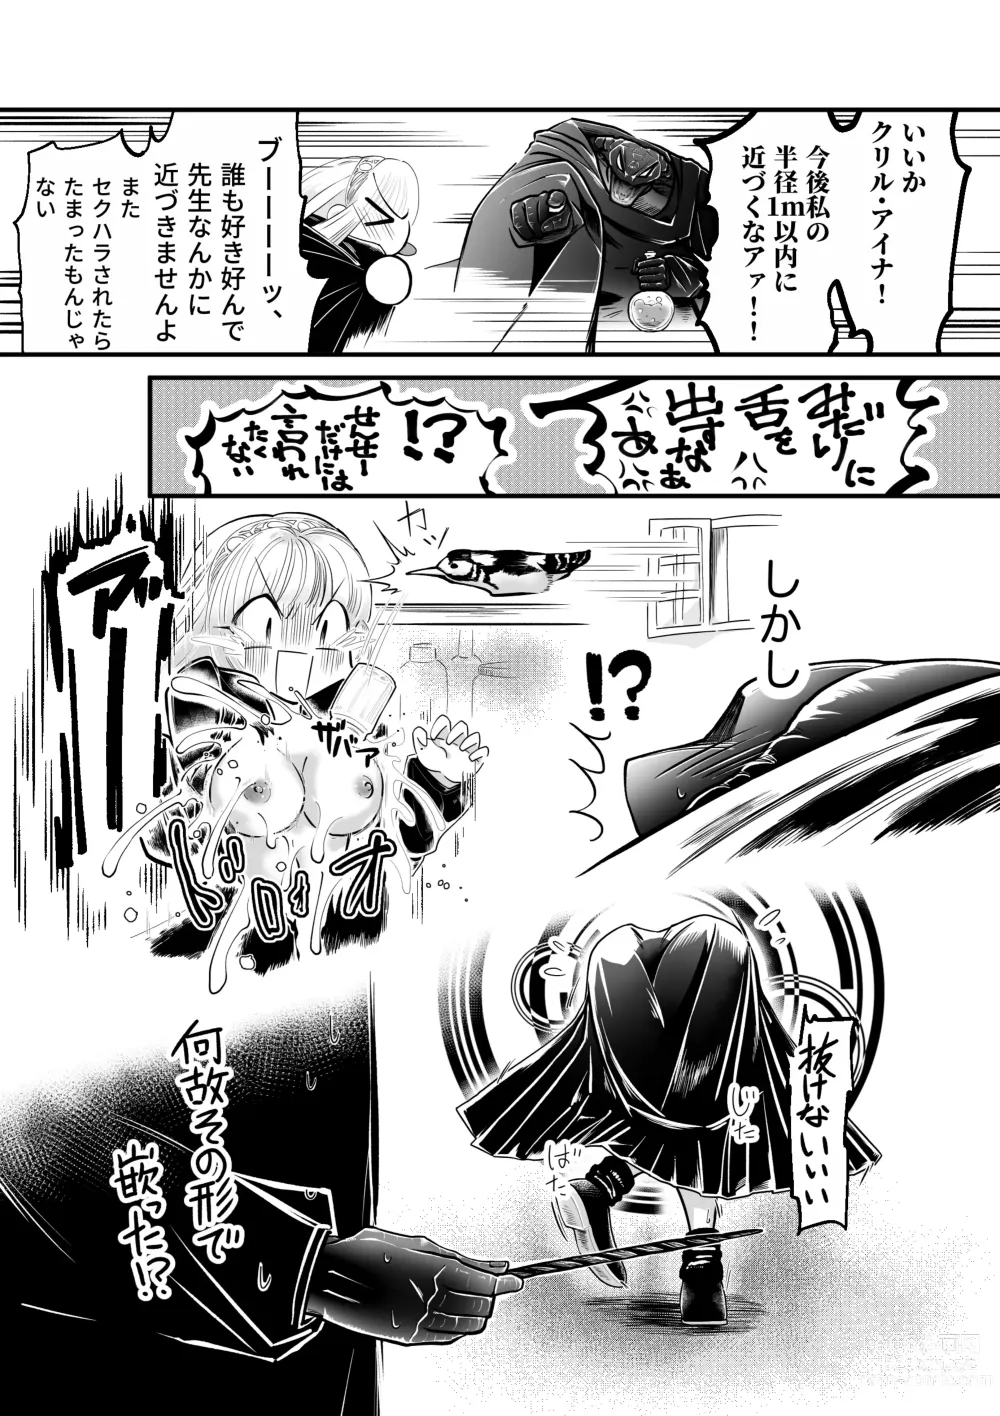 Page 9 of doujinshi Dakatsu no Gotoku Osoreteita Sensei to Kazukazu no Ero Happening ni Mimawarete Kindan no Kankaku Shadan Otoshiana Kouishou Chiryou